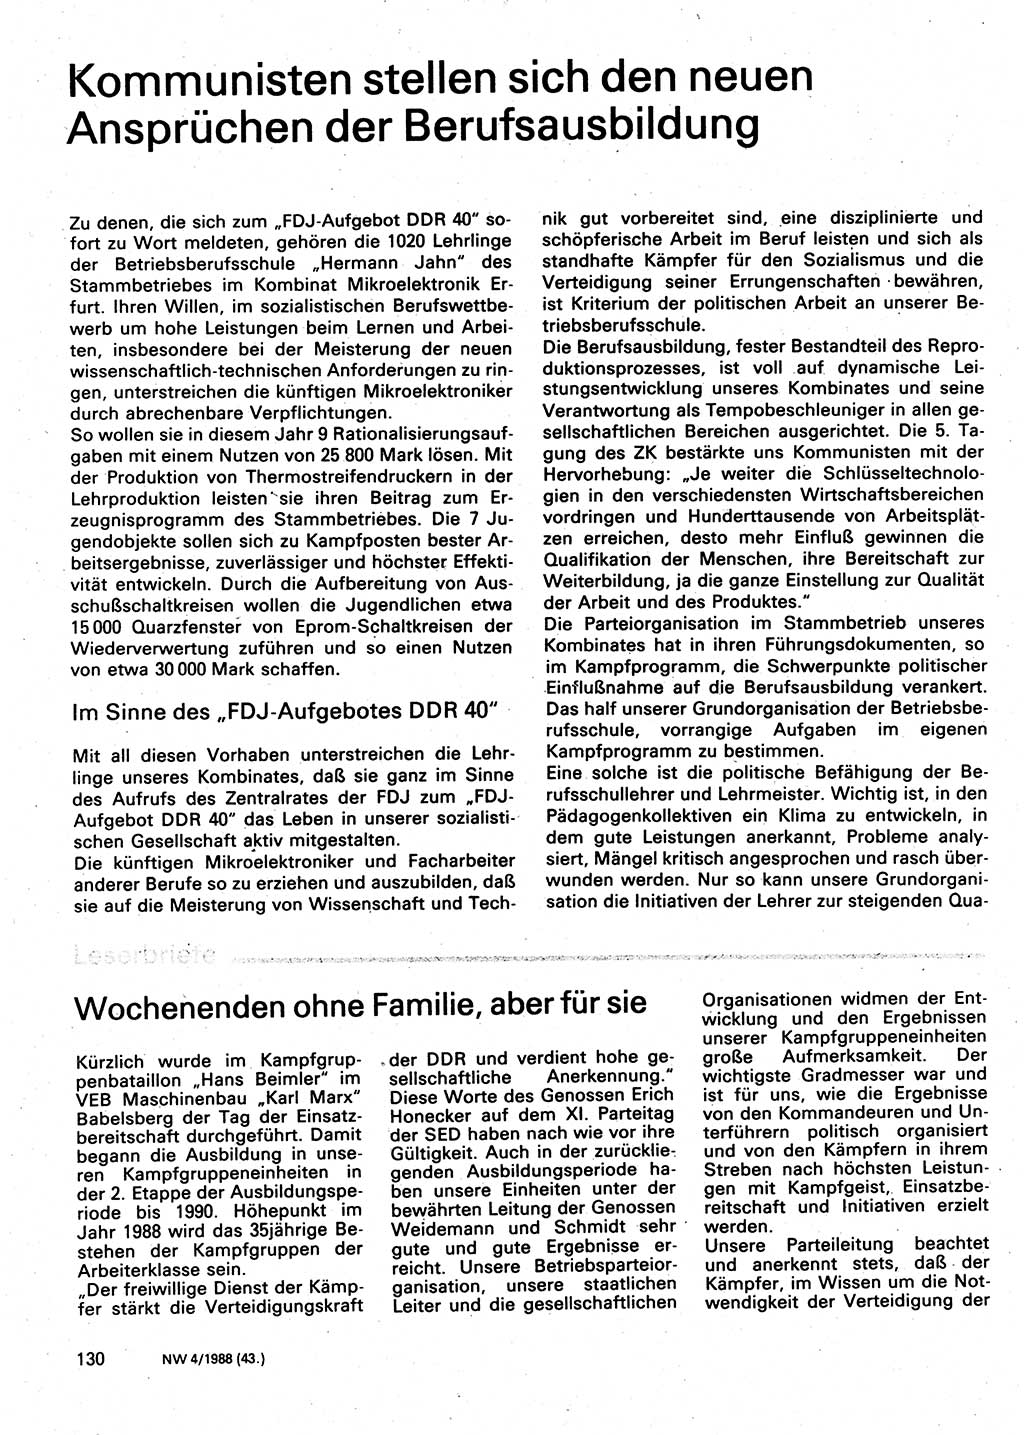 Neuer Weg (NW), Organ des Zentralkomitees (ZK) der SED (Sozialistische Einheitspartei Deutschlands) für Fragen des Parteilebens, 43. Jahrgang [Deutsche Demokratische Republik (DDR)] 1988, Seite 130 (NW ZK SED DDR 1988, S. 130)